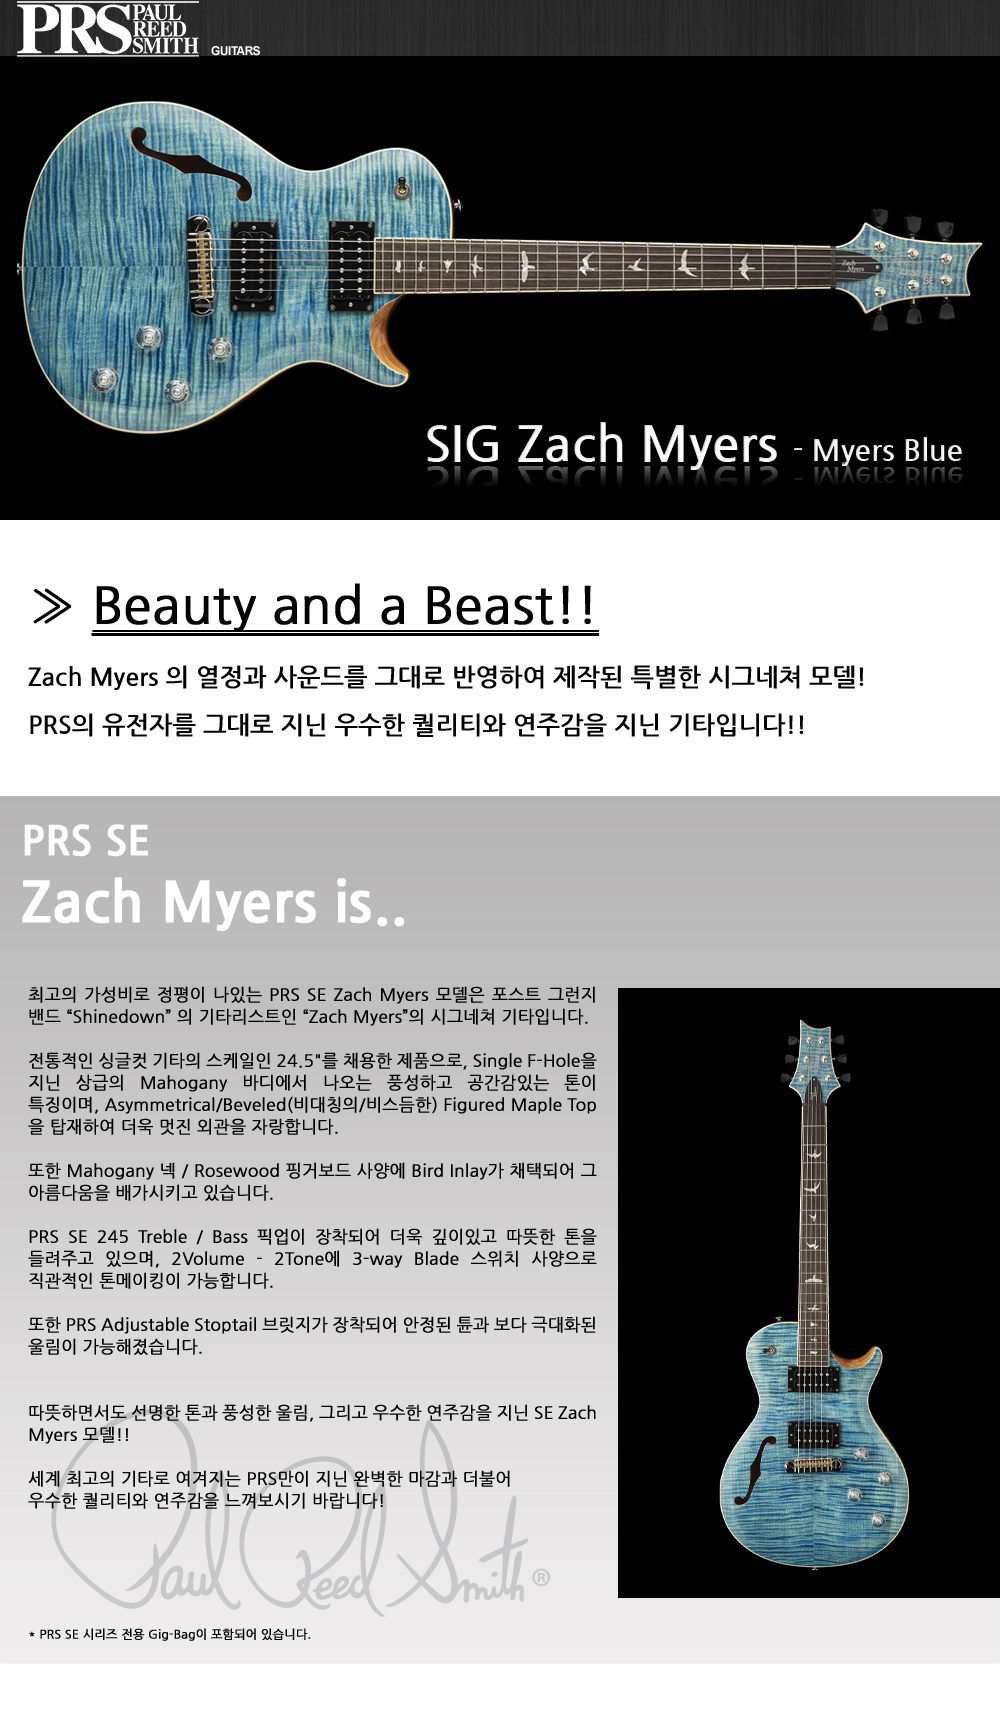 PRS2022-SE-SIG-ZachMyers-MyersBlue_1_162352.jpg